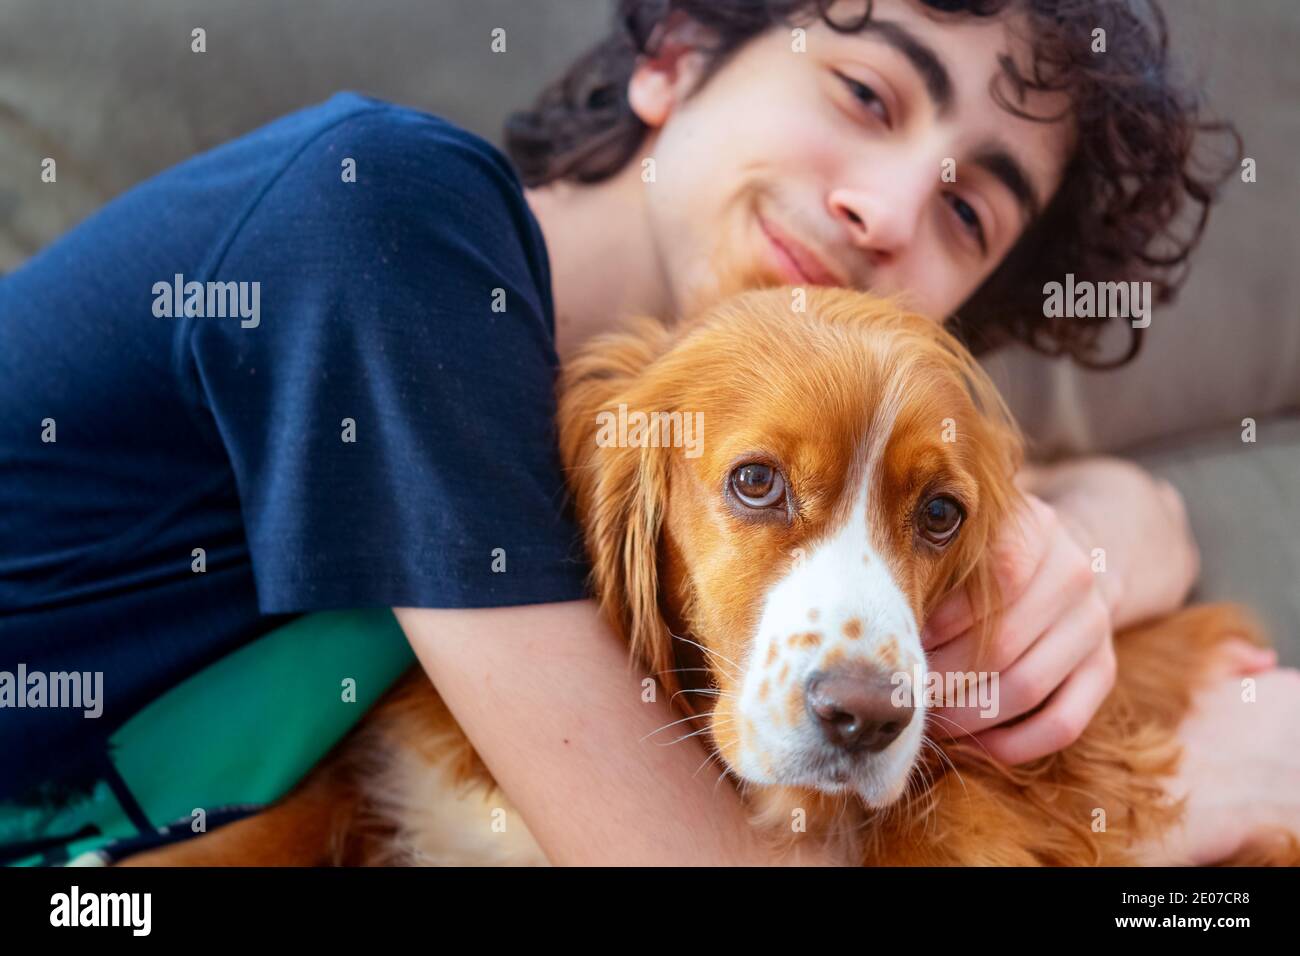 Garçon adolescent mâle avec son adorable chien cocker spaniel animal de compagnie Banque D'Images